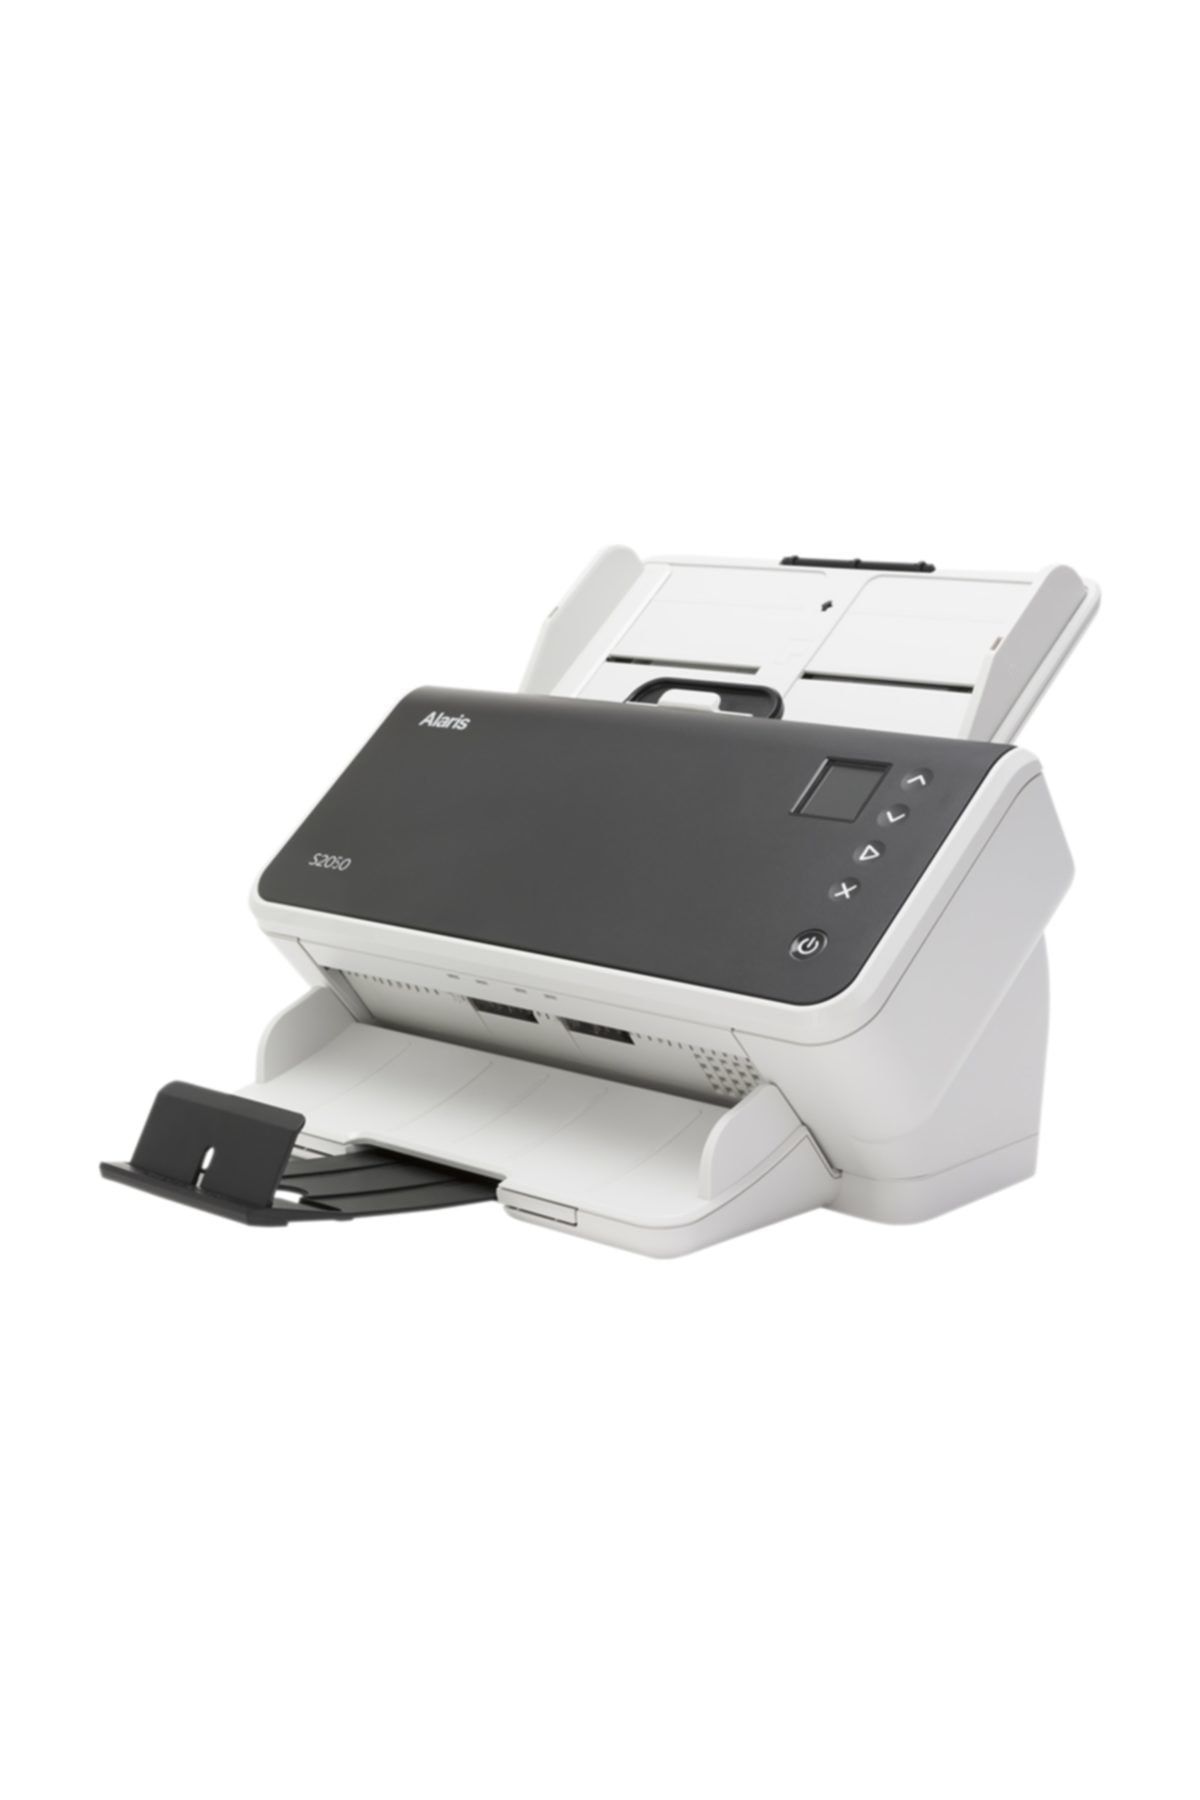 Dpi для сканирования документов. Документ-сканер Kodak alaris s2050. Опция планшетного сканера Kodak alaris. Сканер а4. Мобильный принтер и сканер а4 для телефона.